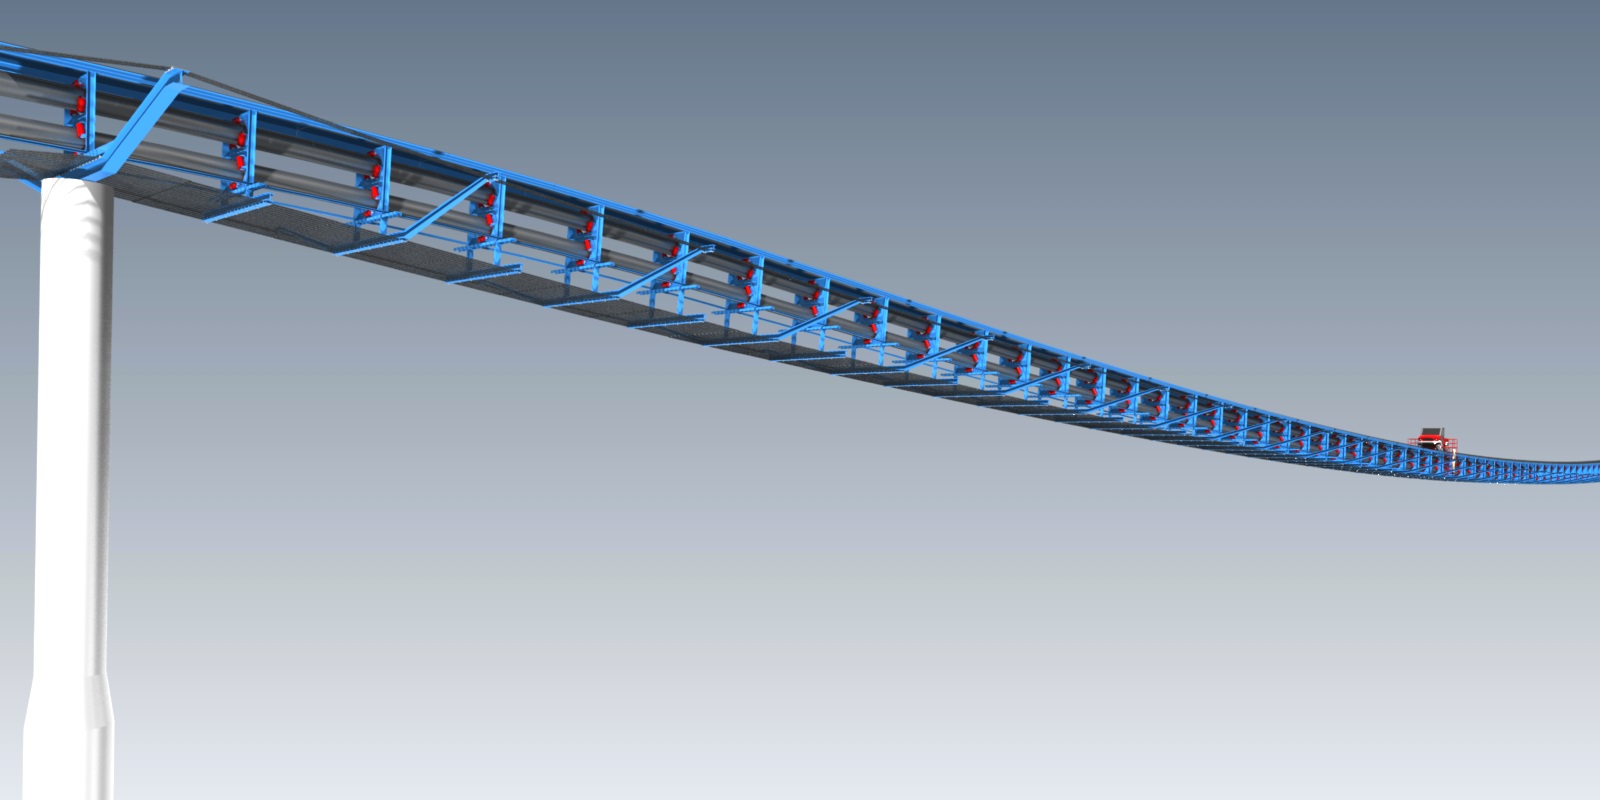 New Innovation in Bridge Conveyor Design